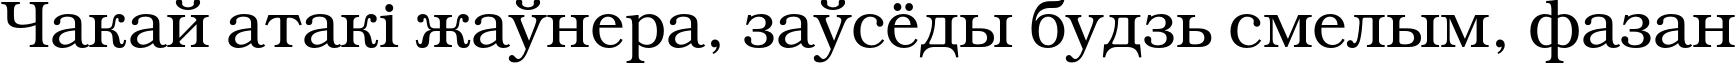 Пример написания шрифтом BookmanC текста на белорусском